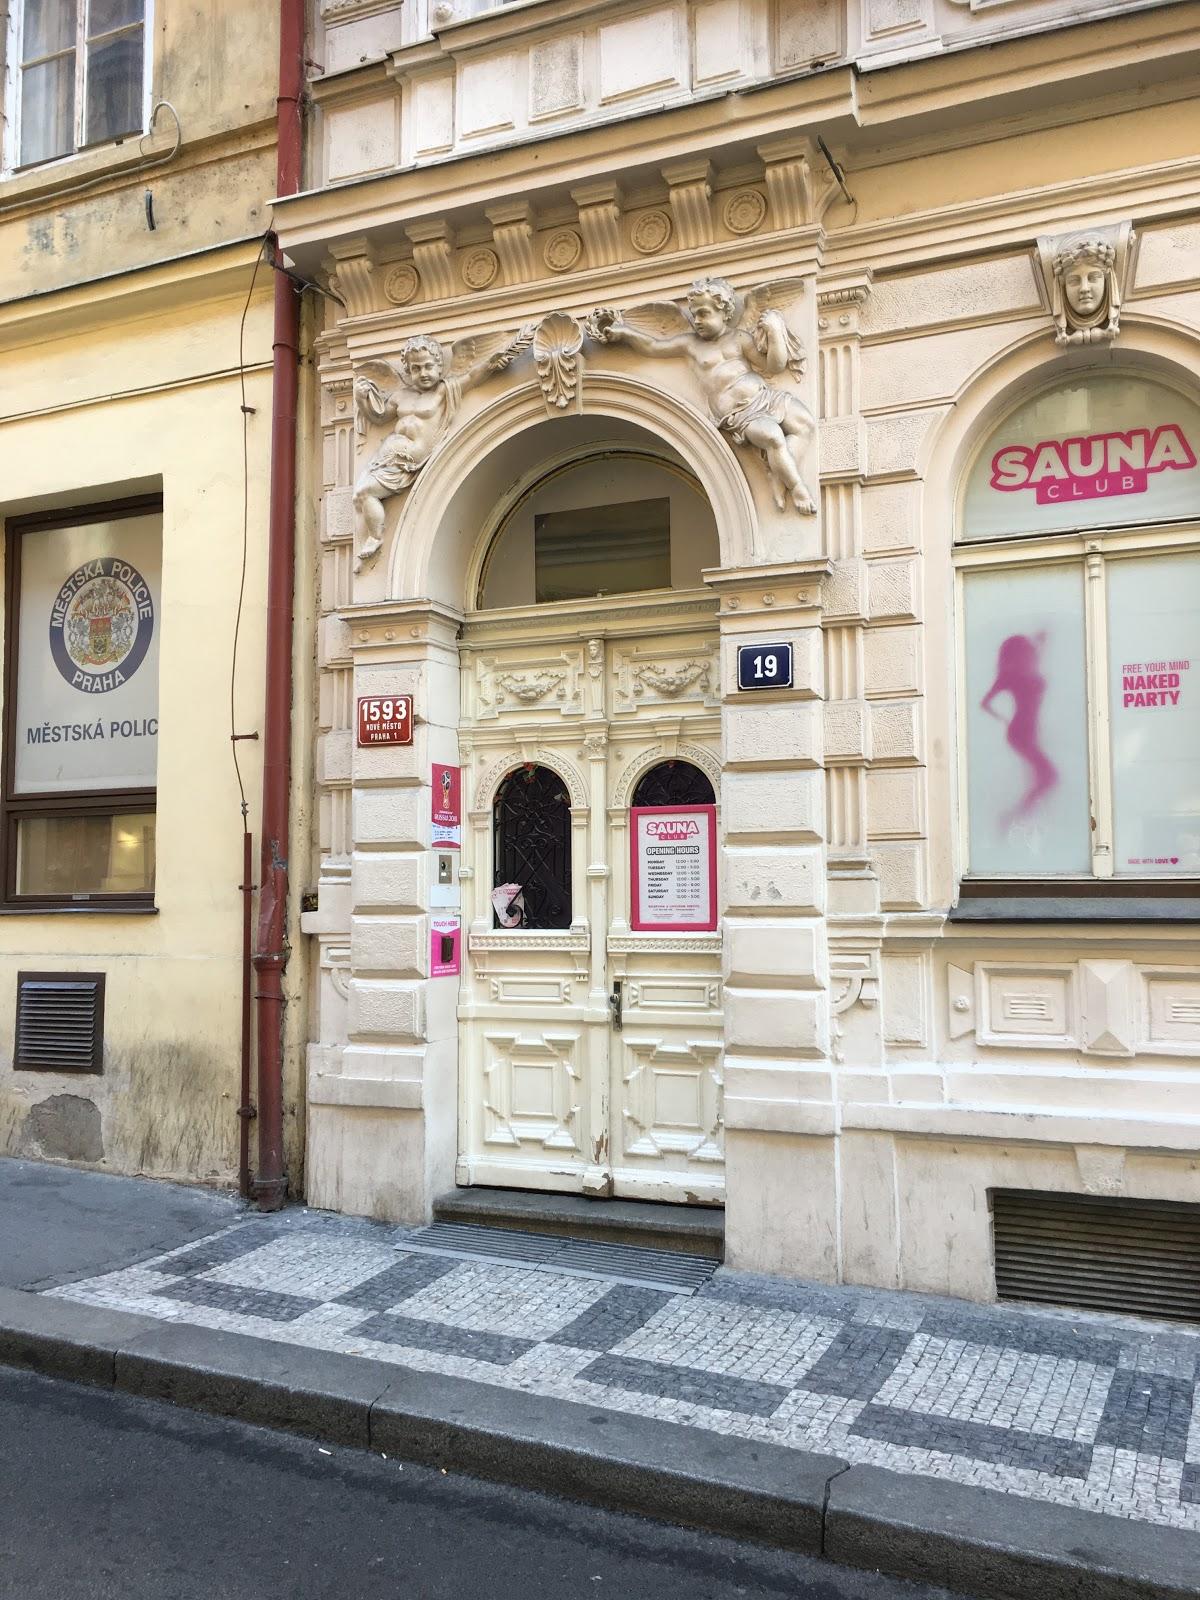 Sauna Club, Czech Republic - Restaurant reviews